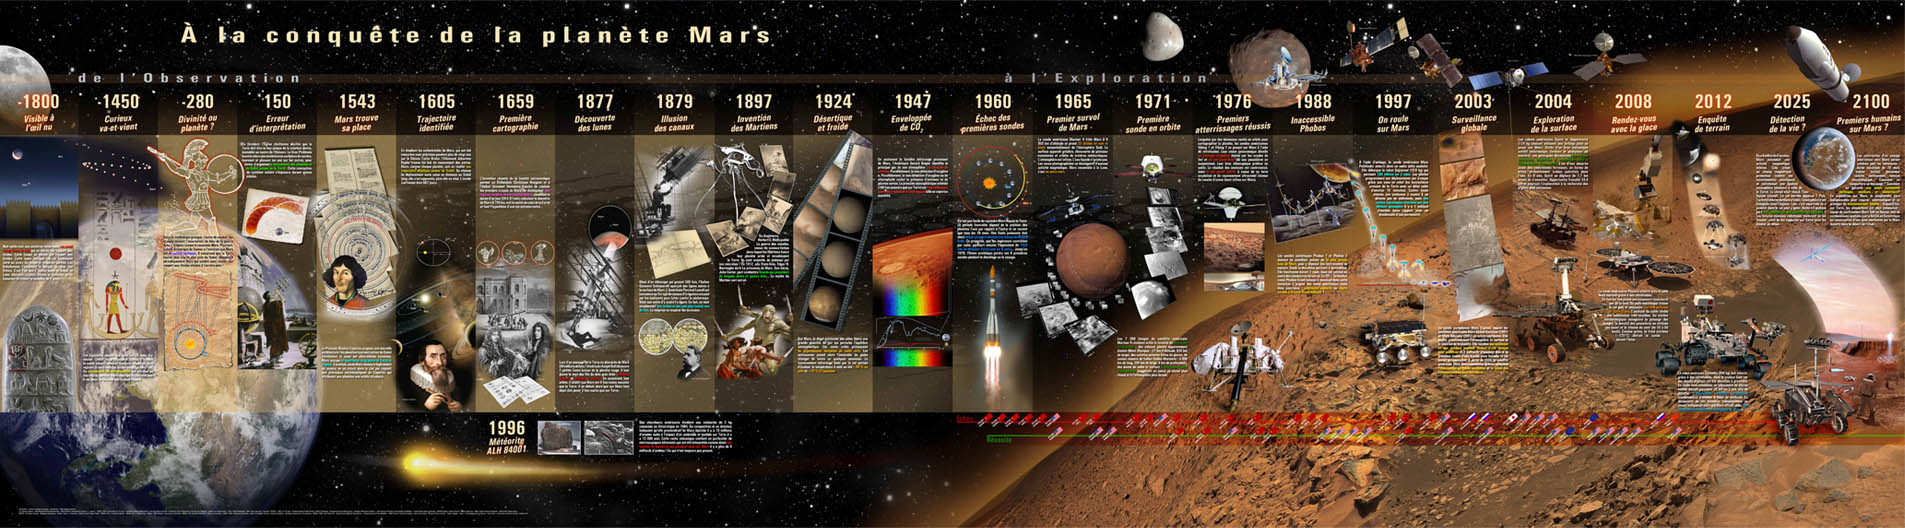 Panorama complete de la fresque «A la conquête de Mars»